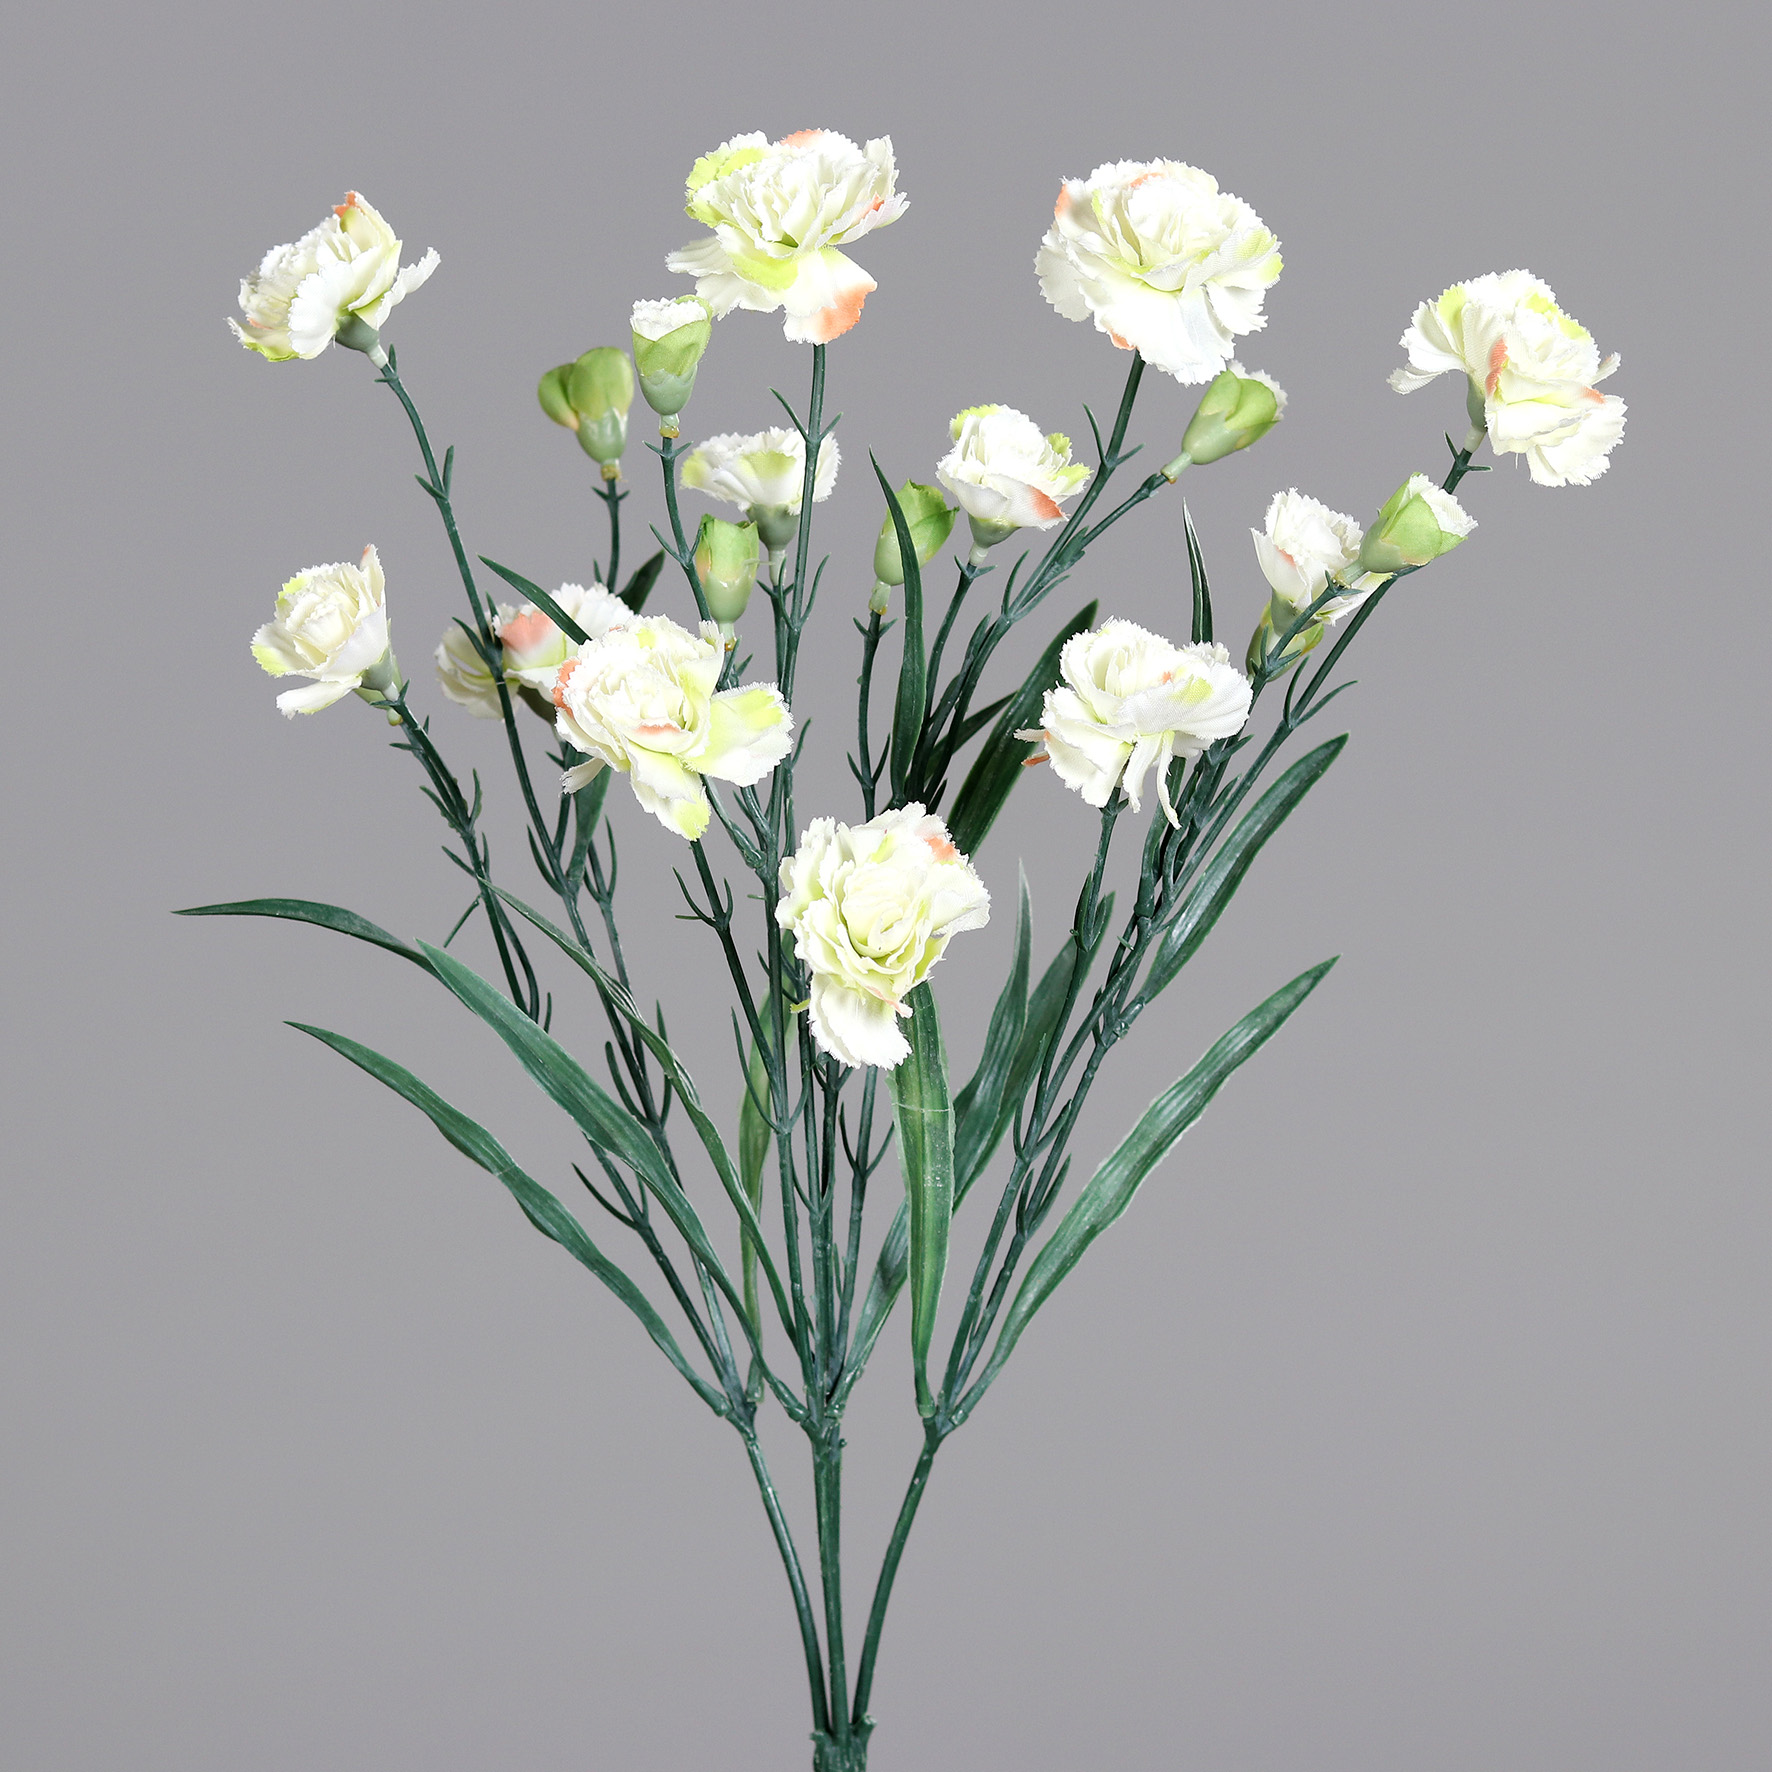 Trossnelkenbusch 50cm weiß DP Kunstblumen künstliche Nelke Nelken Trossnelken Blumen